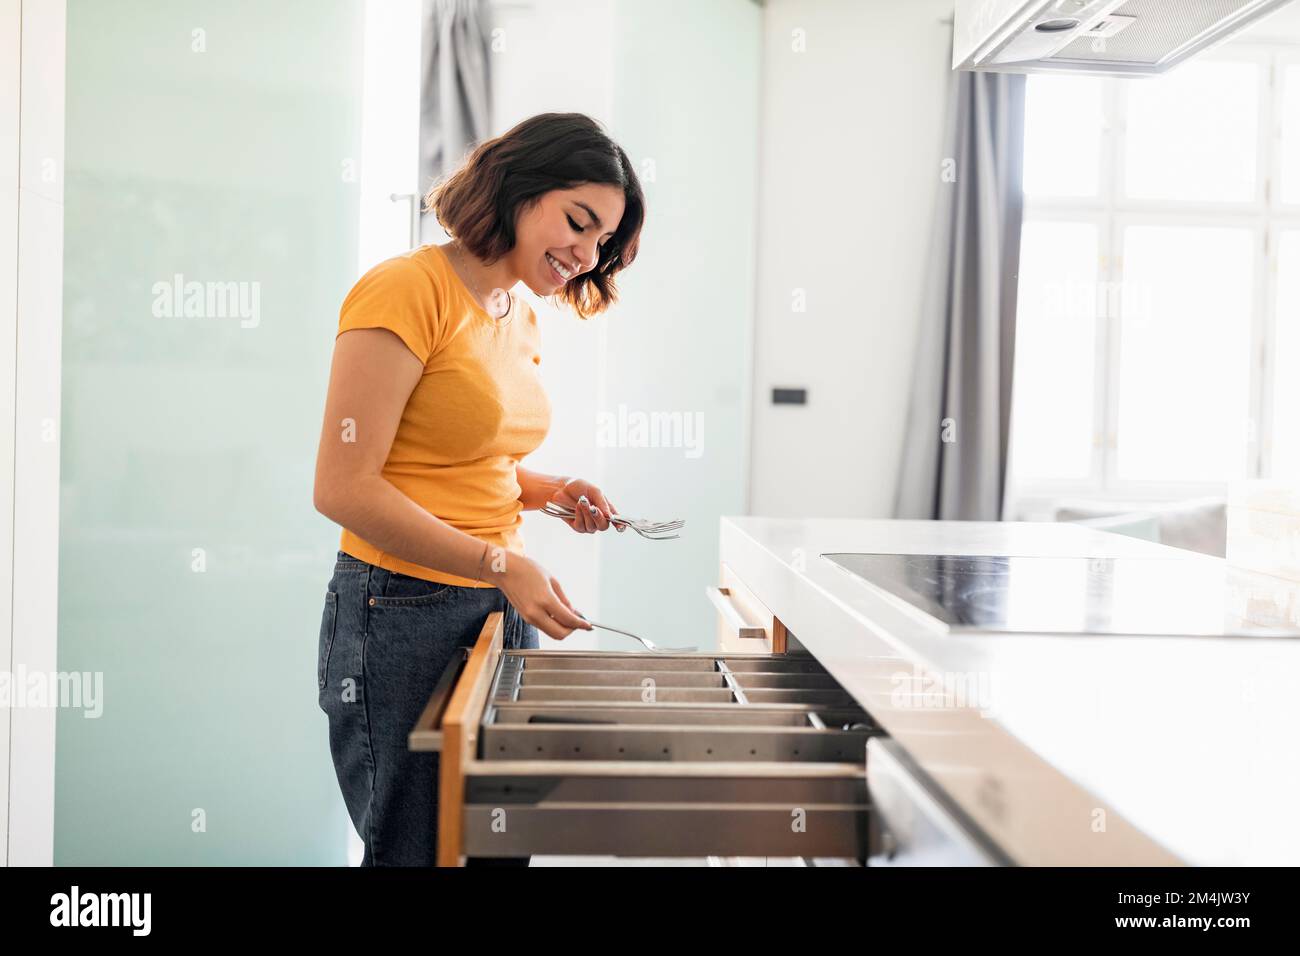 Mujer sonriente del Medio Oriente ordenando hasta los cubiertos en cajón de la cocina, vista lateral Foto de stock